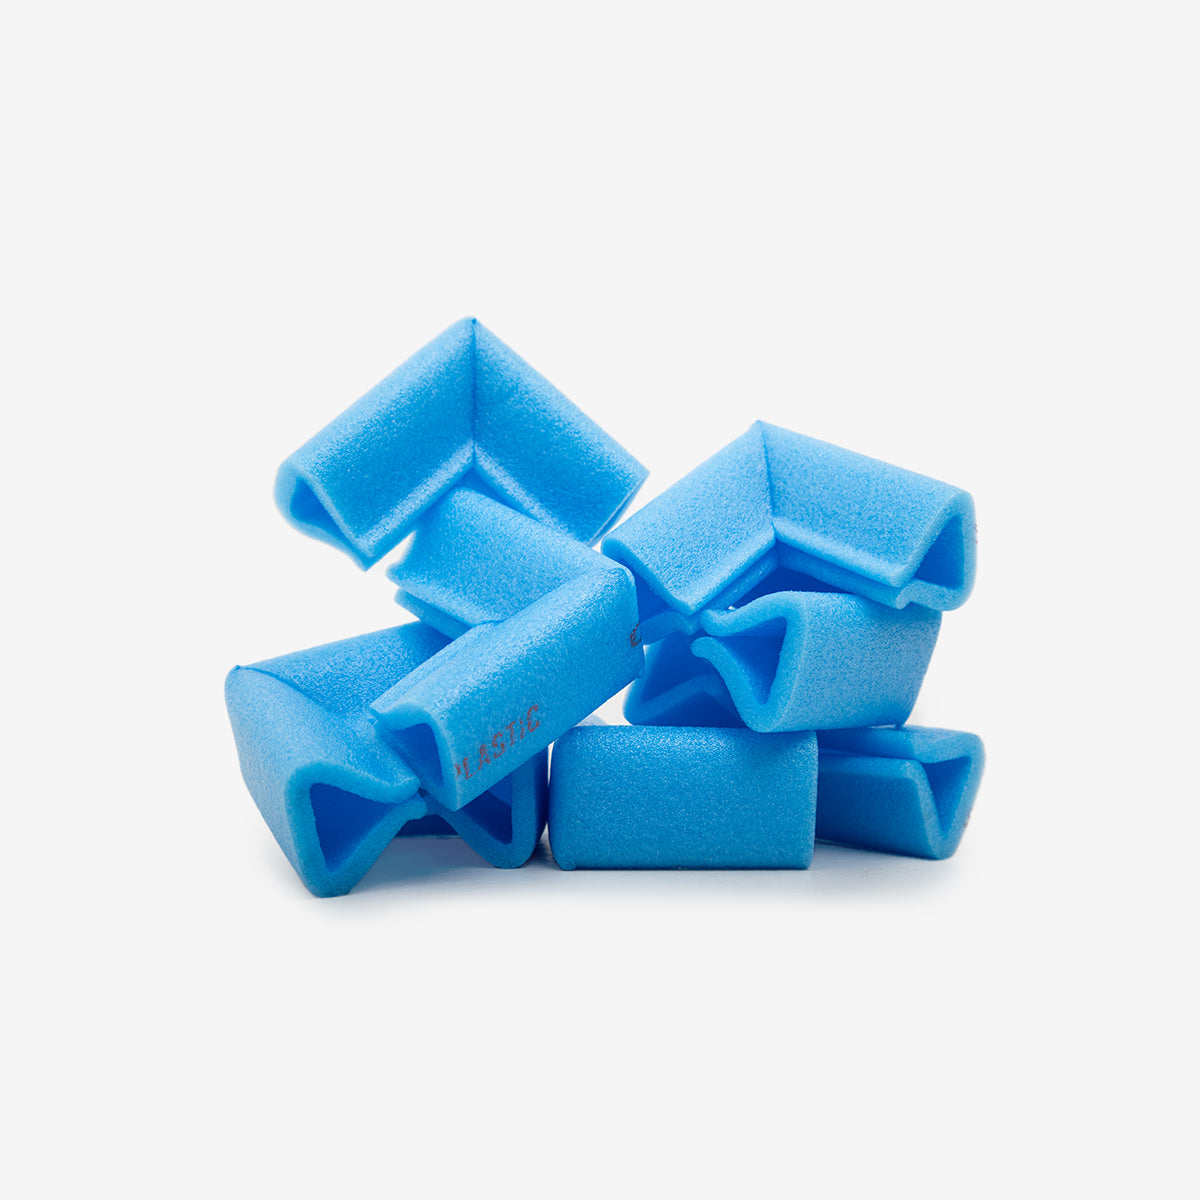 Paraspigoli in polietilene espanso azzurro